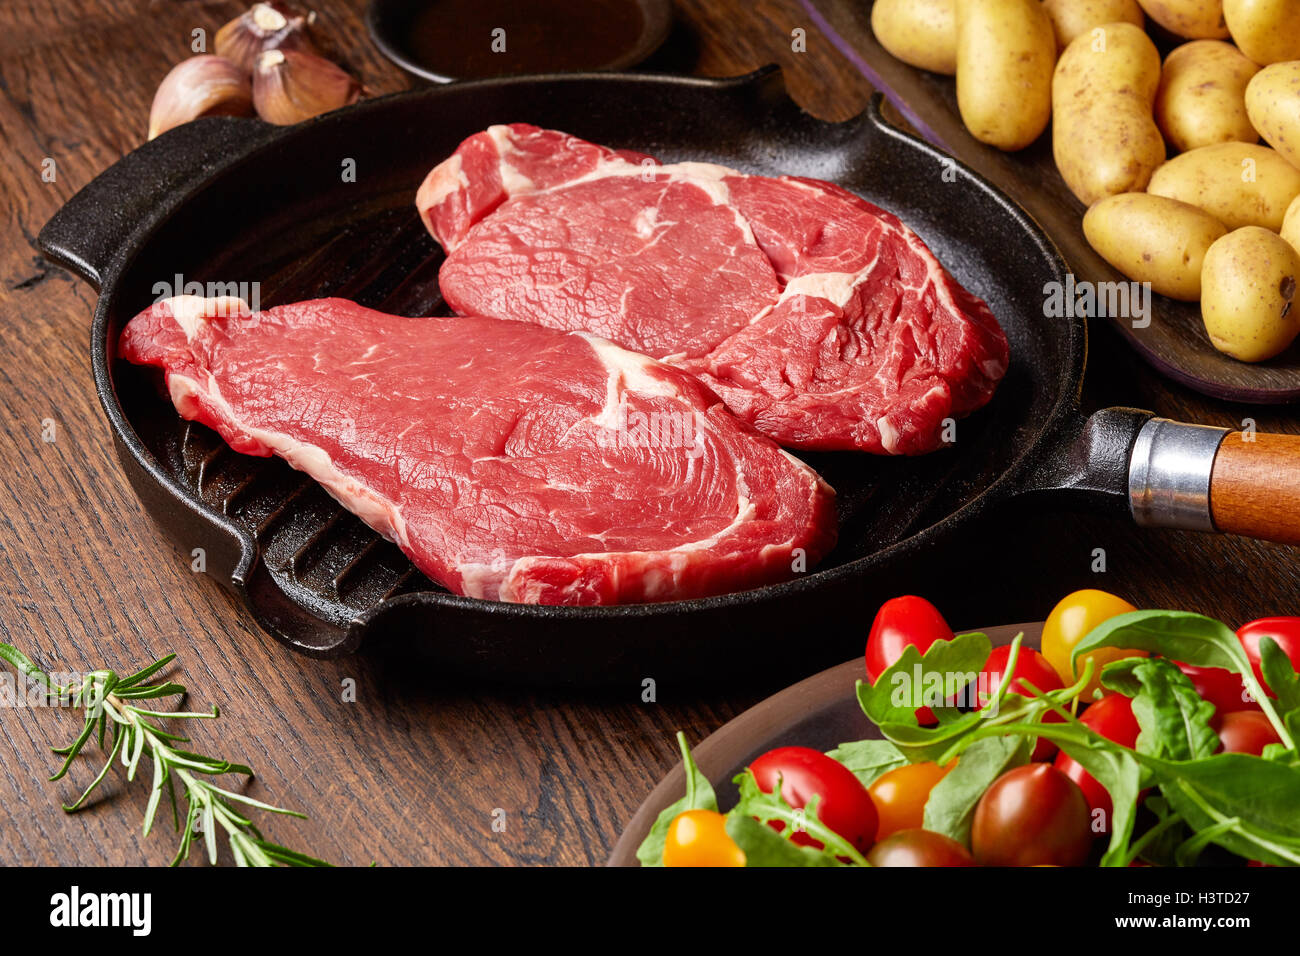 Steak de boeuf cru sur gril, pommes de terre, les épices et les tomates de table en bois Banque D'Images